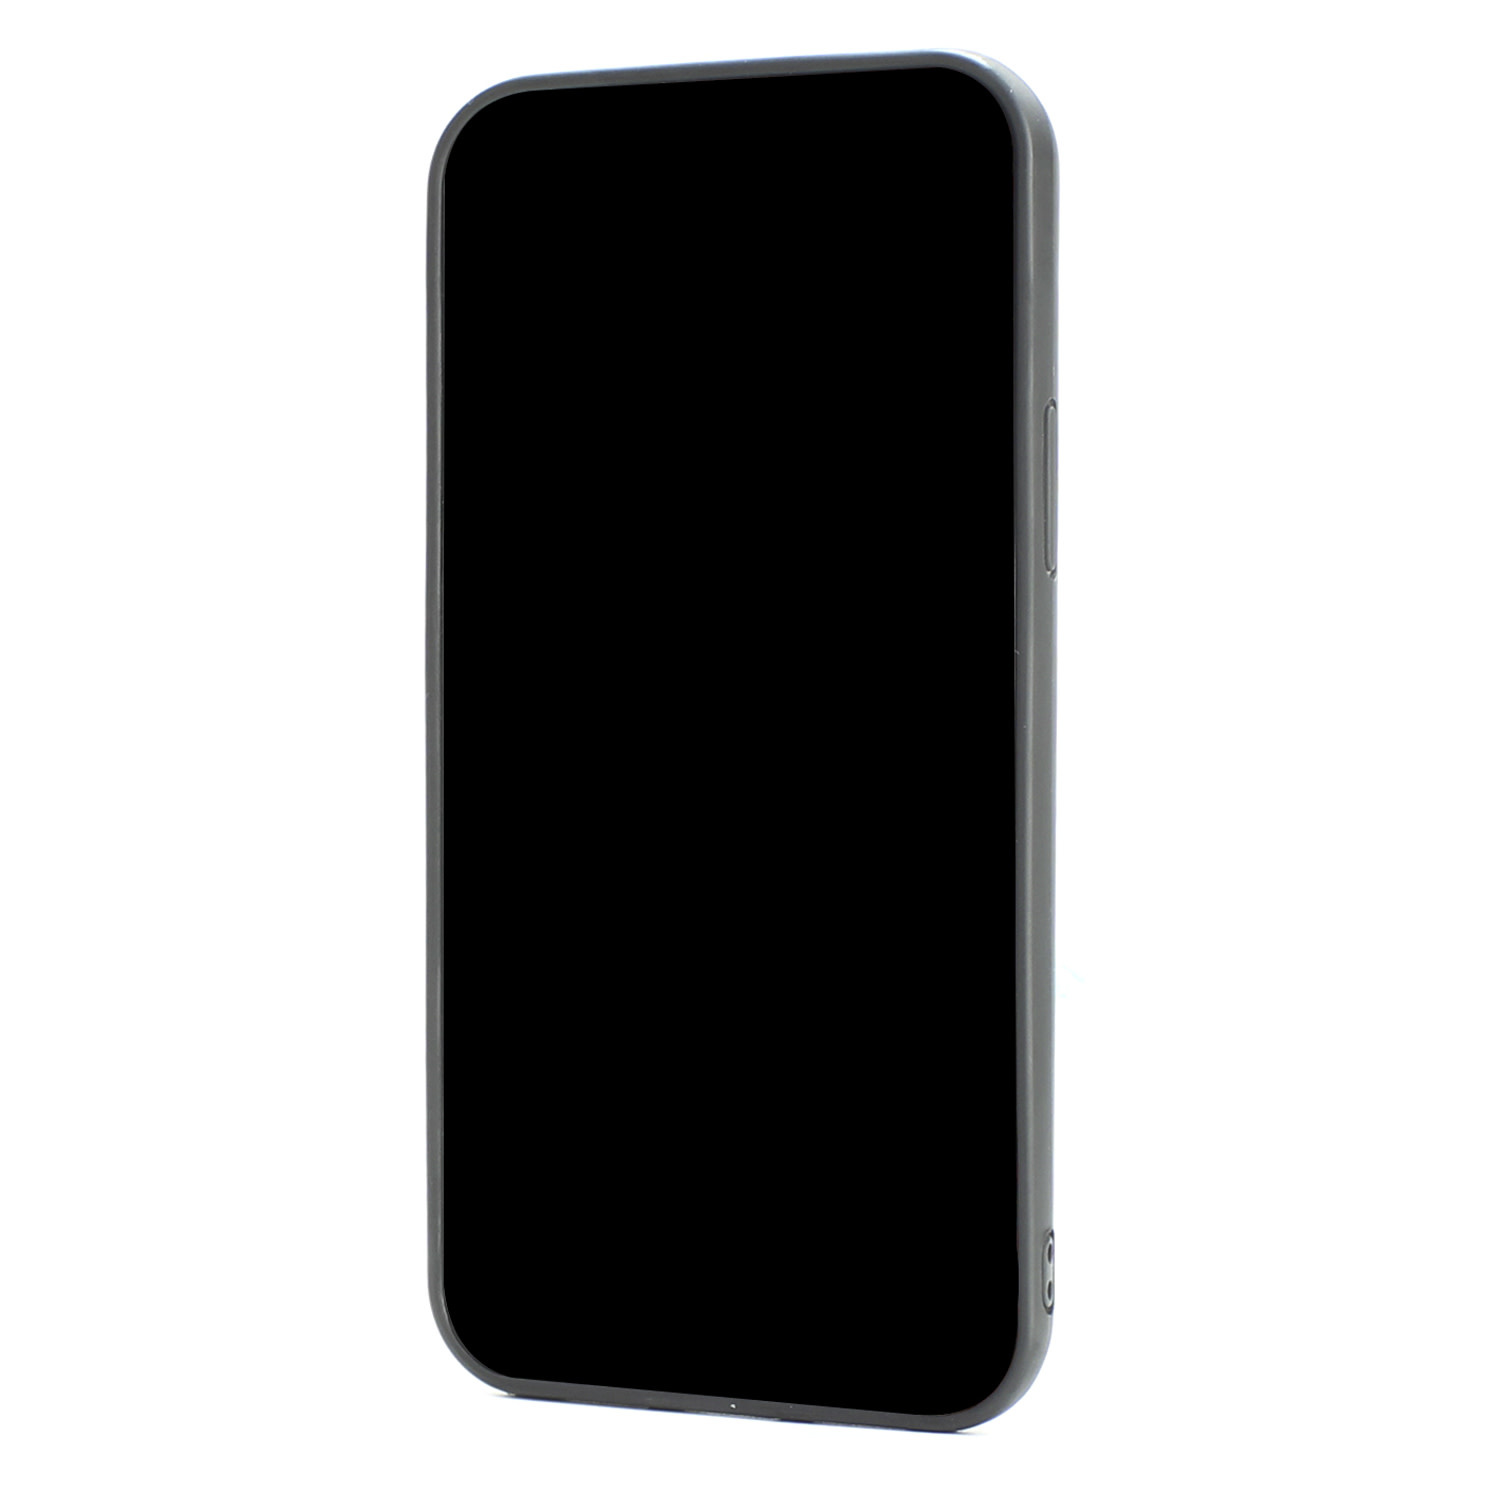 Audi Apple iPhone 12 Mini Fekete hátlaptokR8 Serie